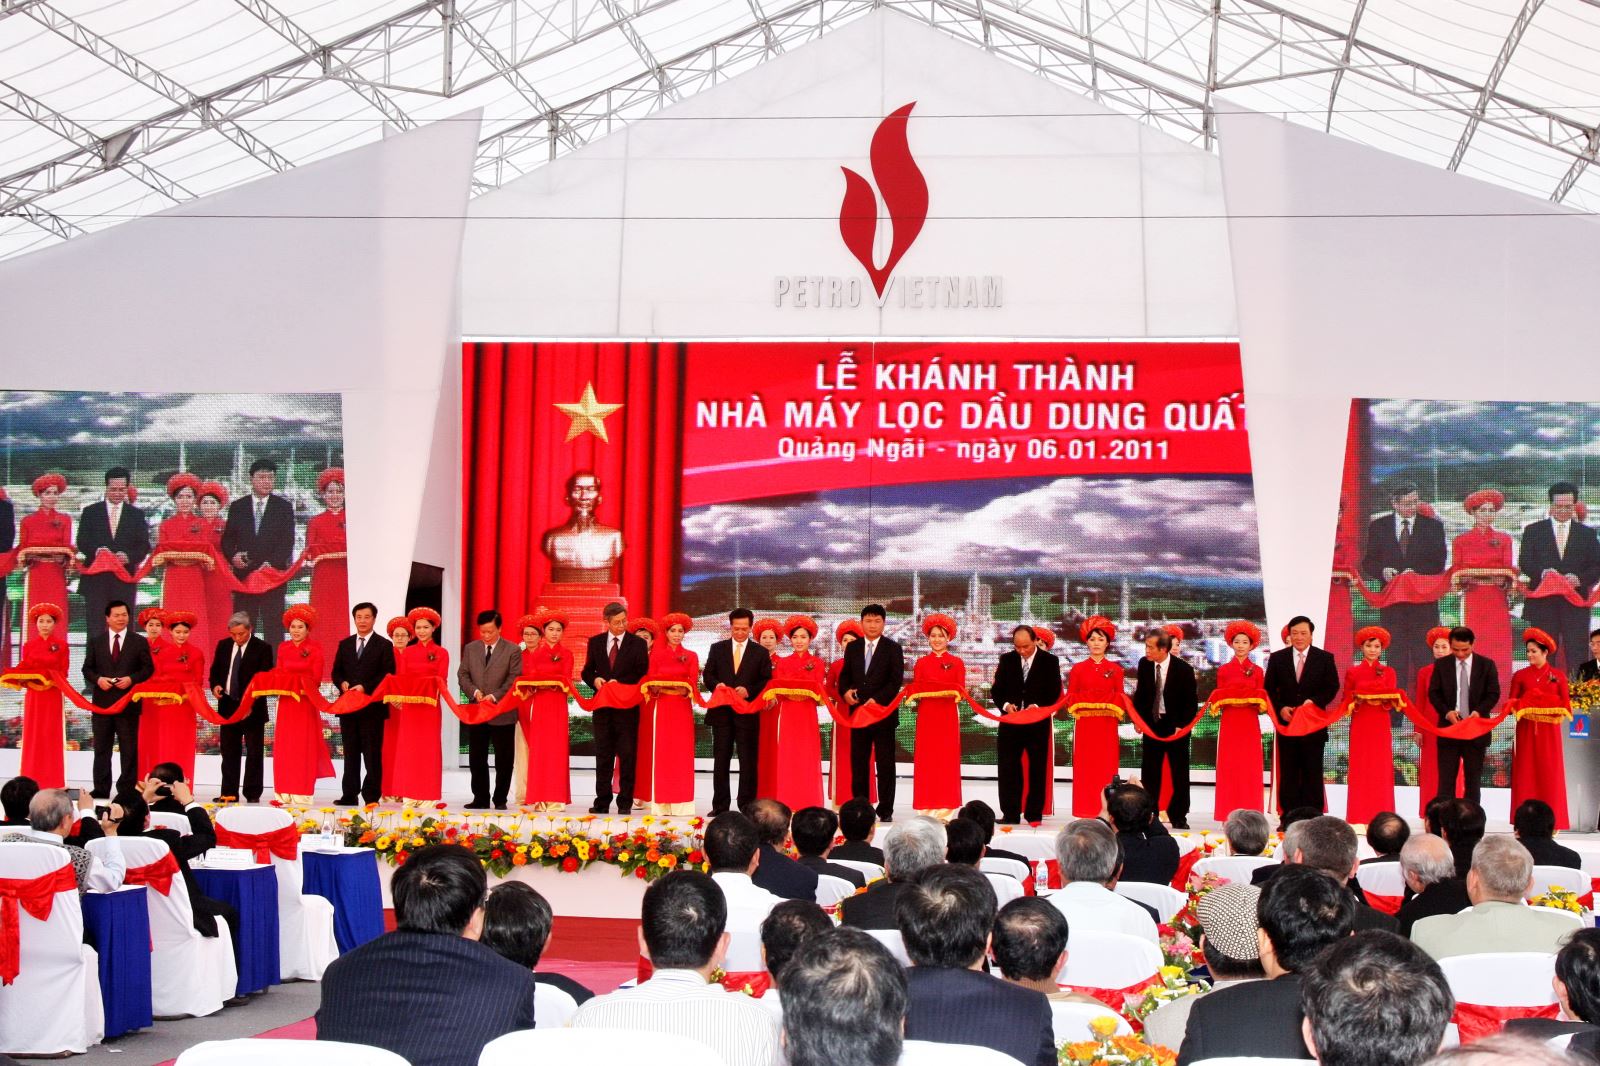 Các vị lãnh đạo Đảng, Nhà nước thực hiện nghi lễ cắt băng khánh thành Nhà máy lọc dầu Dung Quất – nhà máy lọc dầu đầu tiên của Việt Nam.